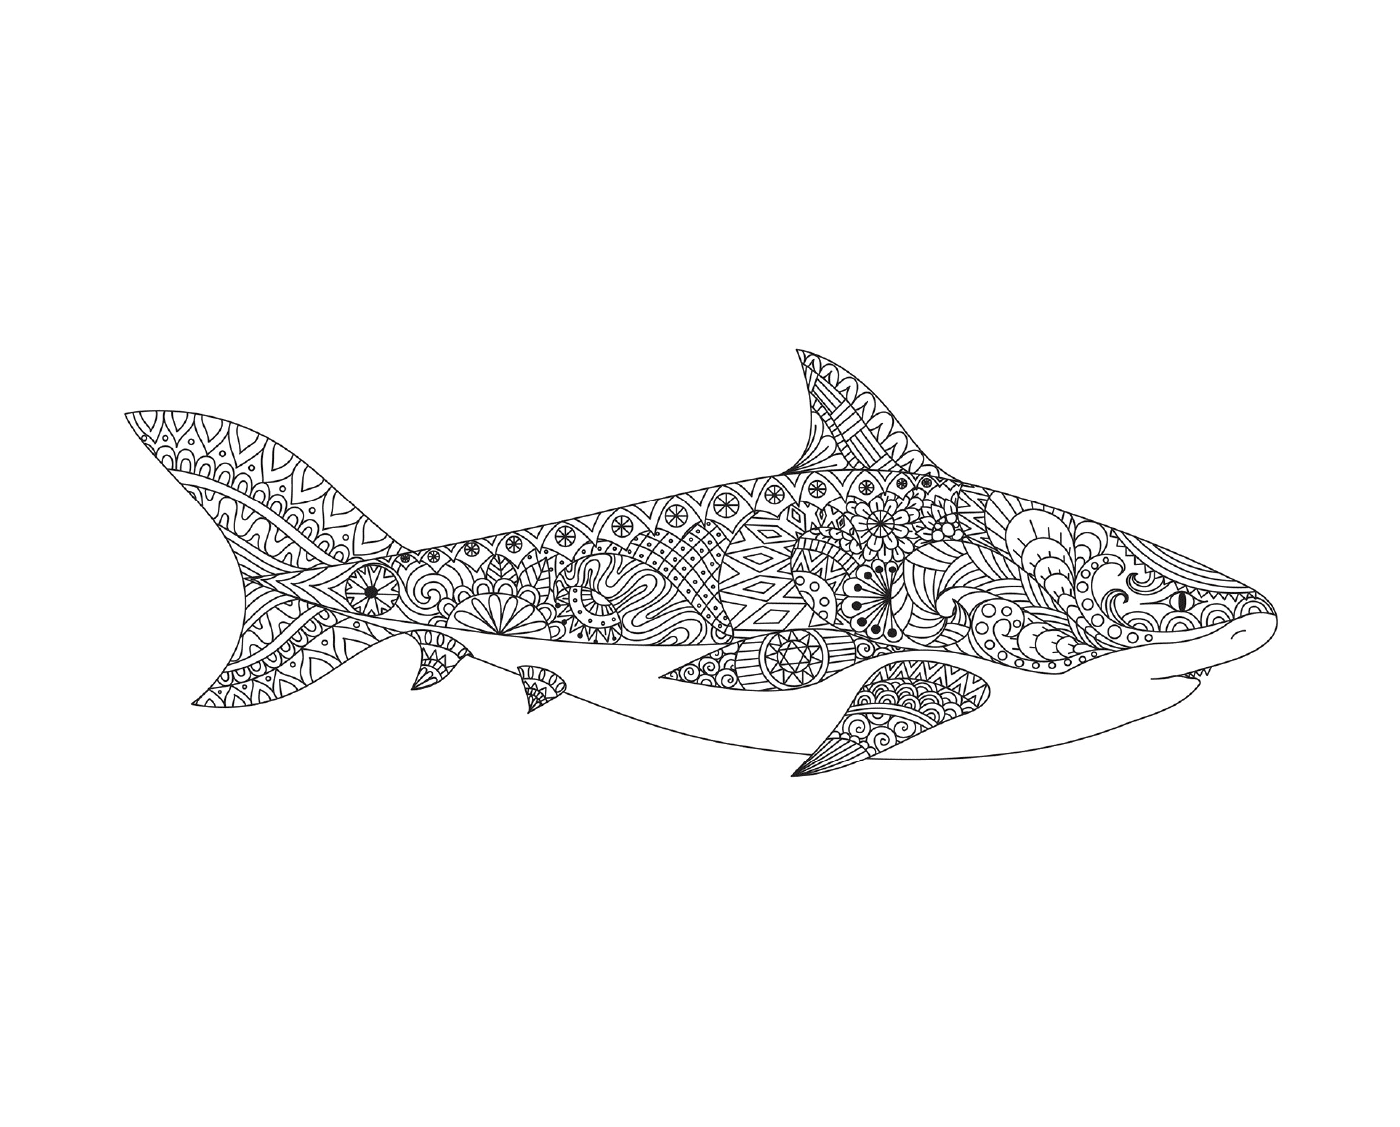   une représentation tatouée d'un requin adulte avec la bouche ouverte 